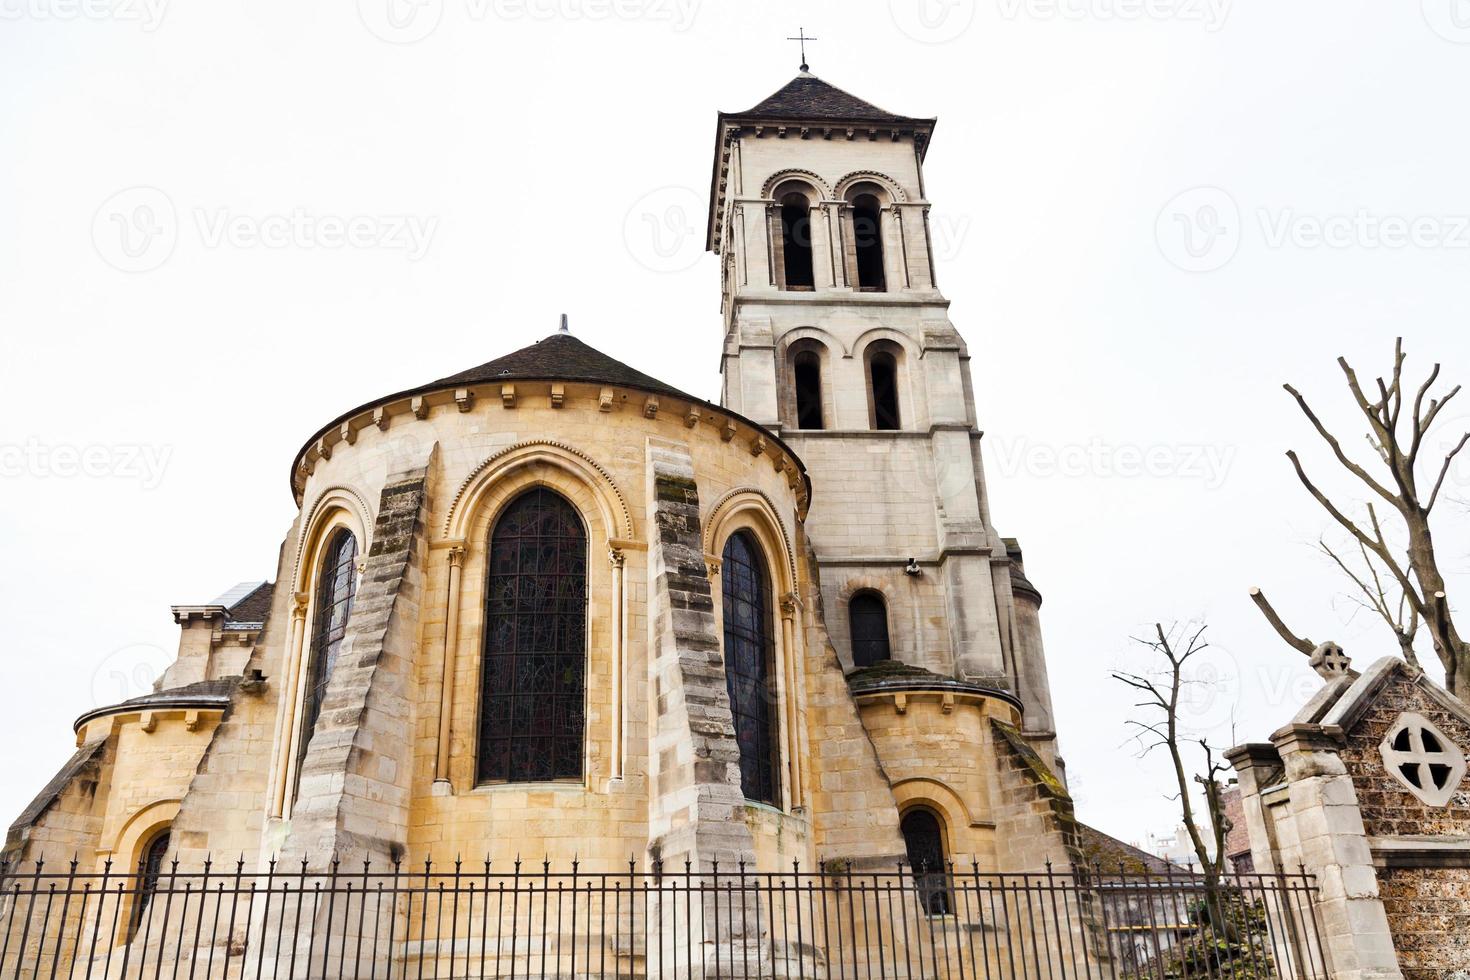 kerk van heilige peter van montmartre, Parijs foto